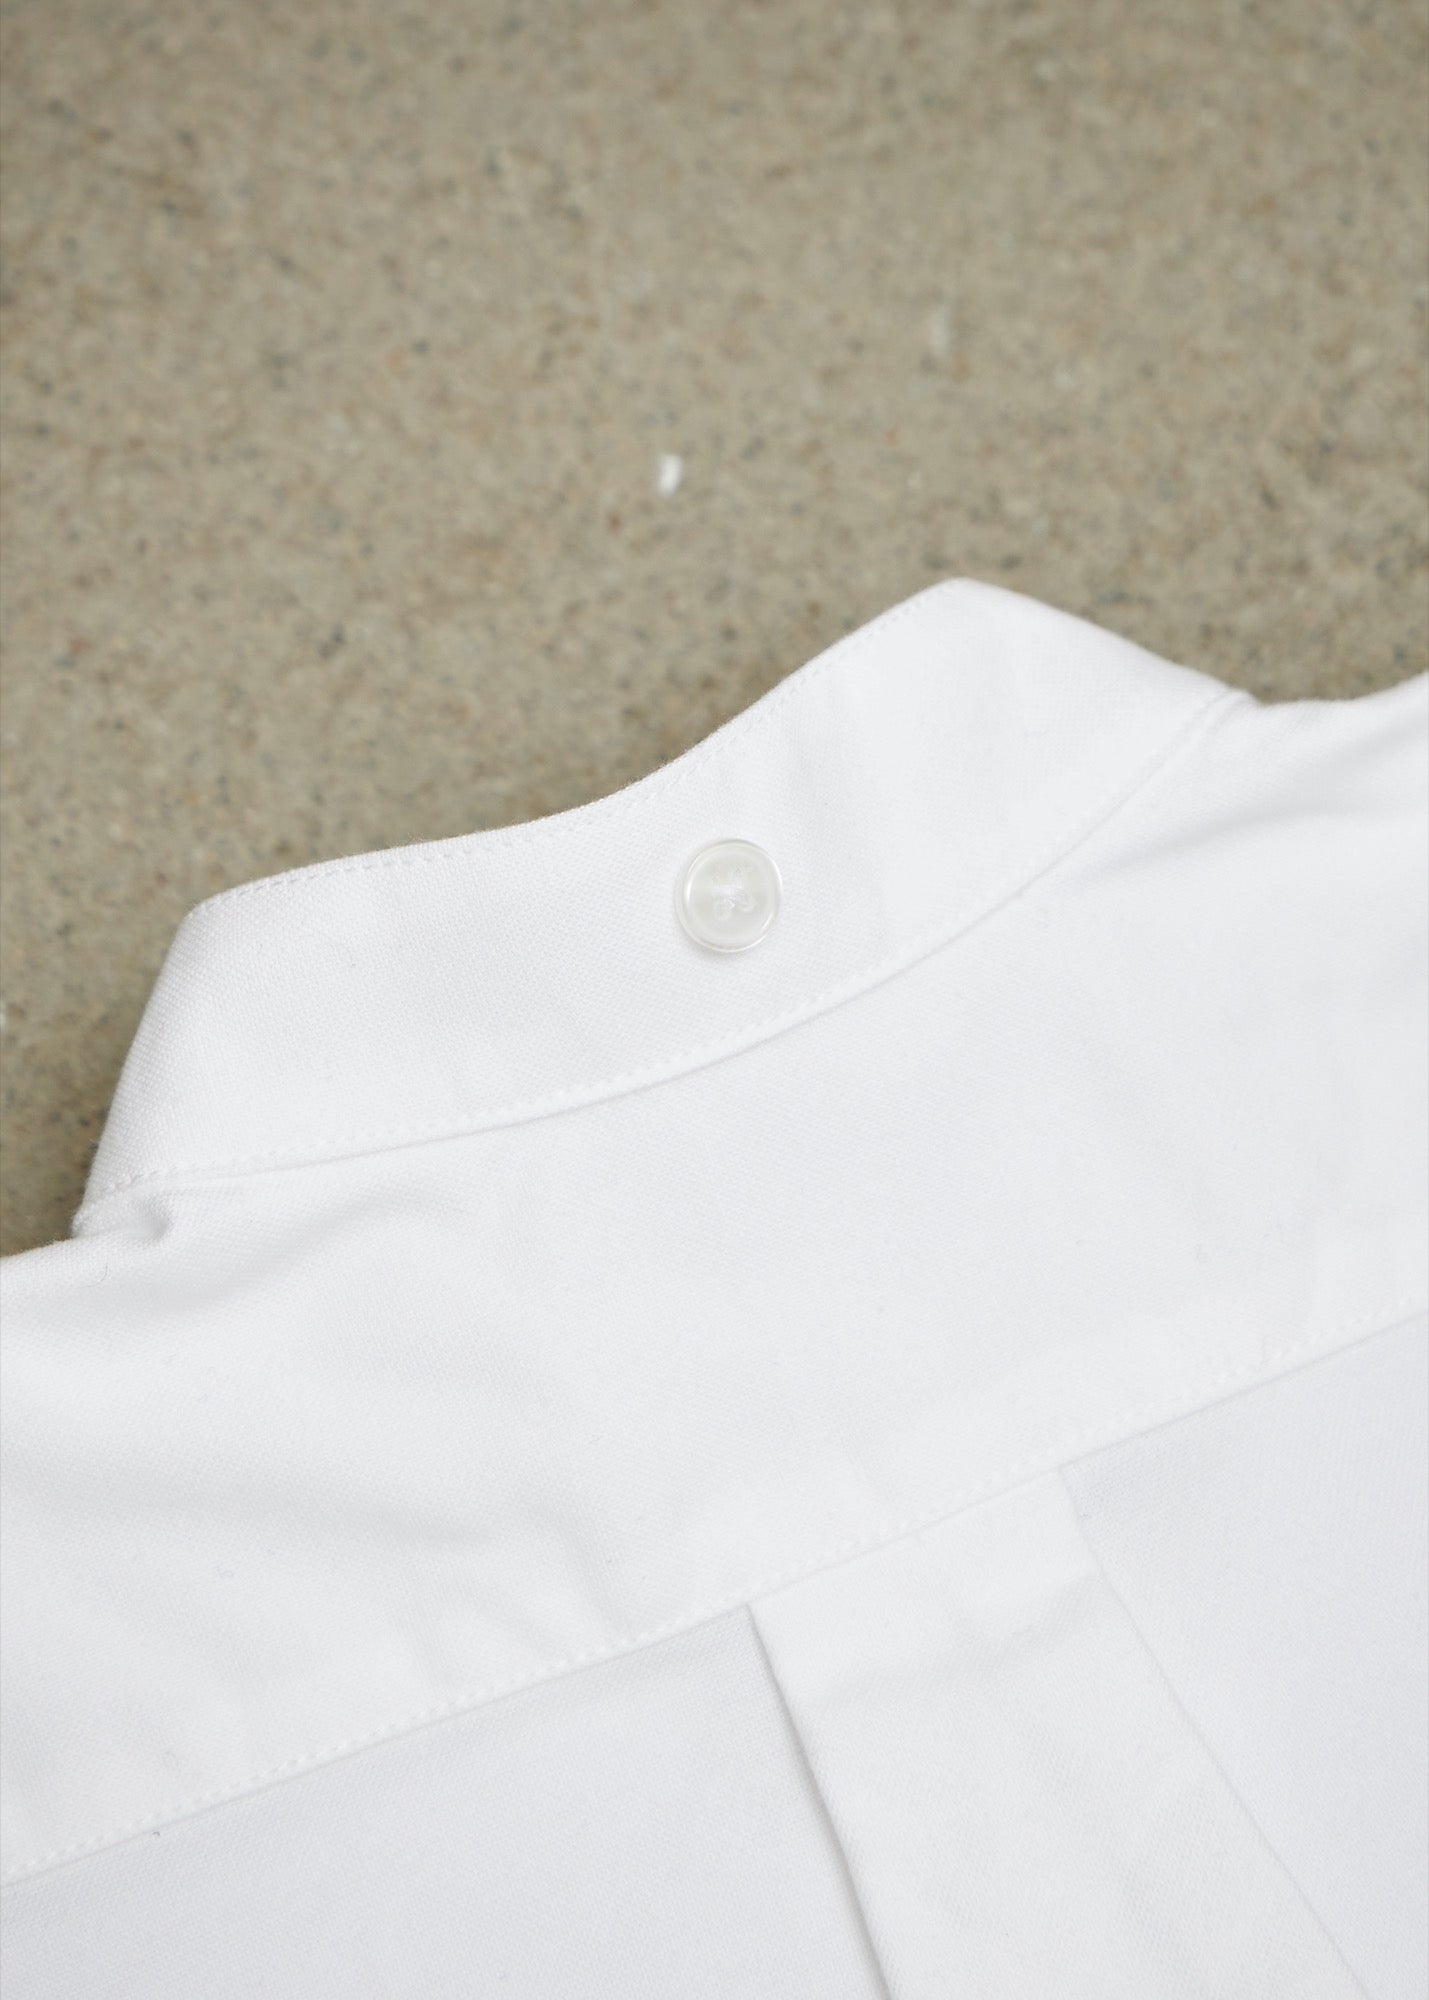 Iru Unisex Shirt - Natural Brushed Cotton